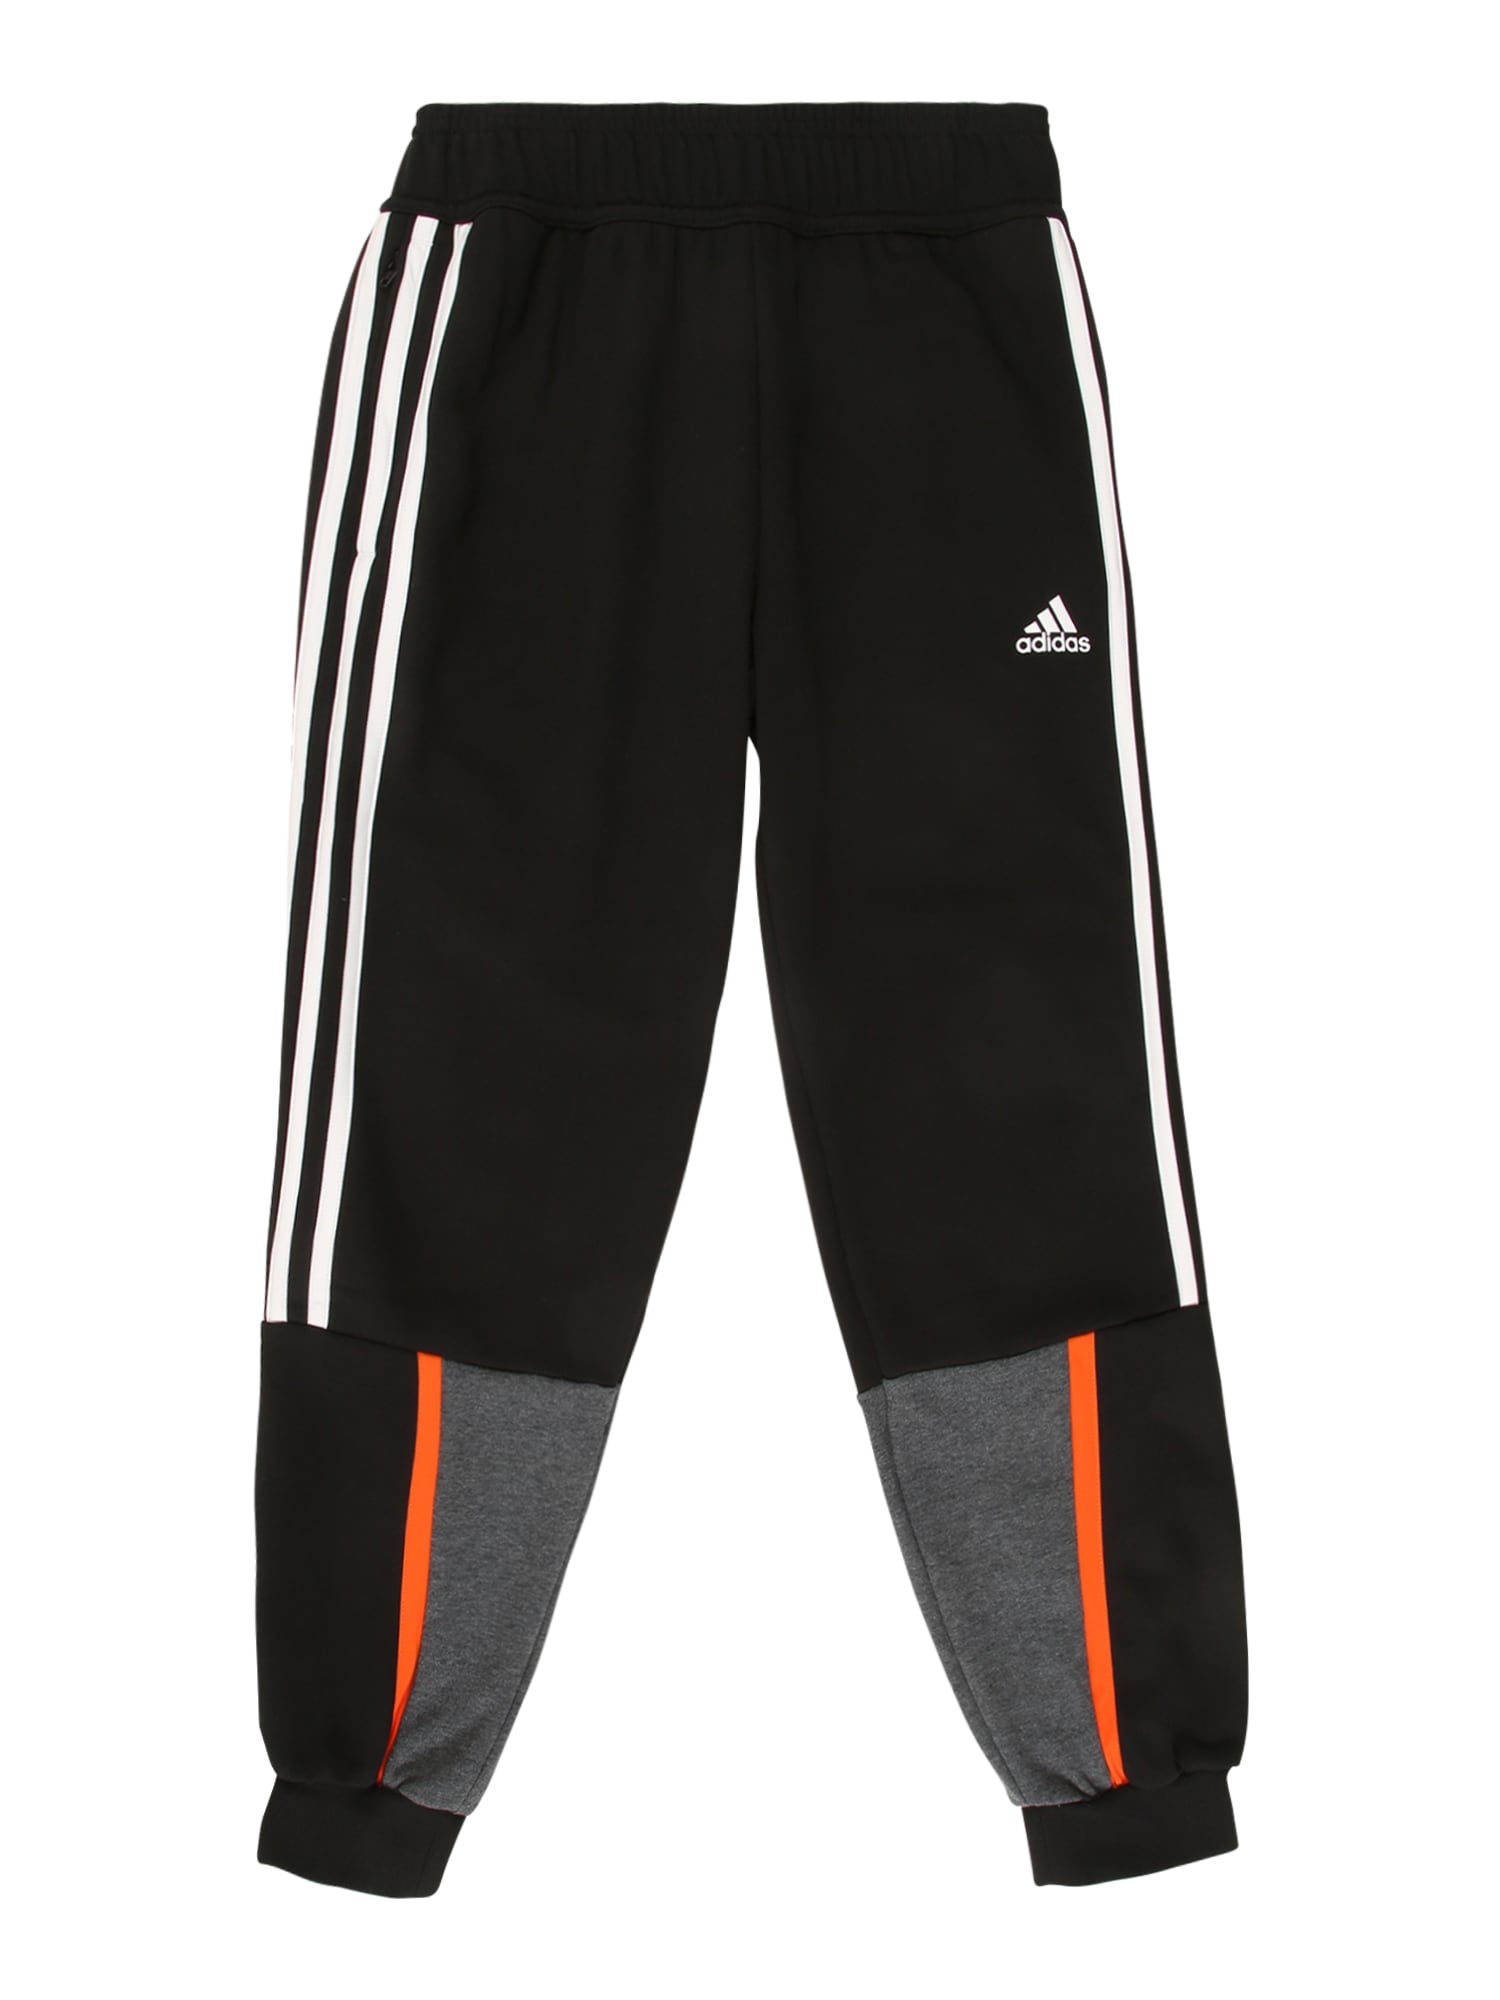 ADIDAS PERFORMANCE Sportinės kelnės 'BOLD'  juoda / balta / tamsiai pilka / oranžinė